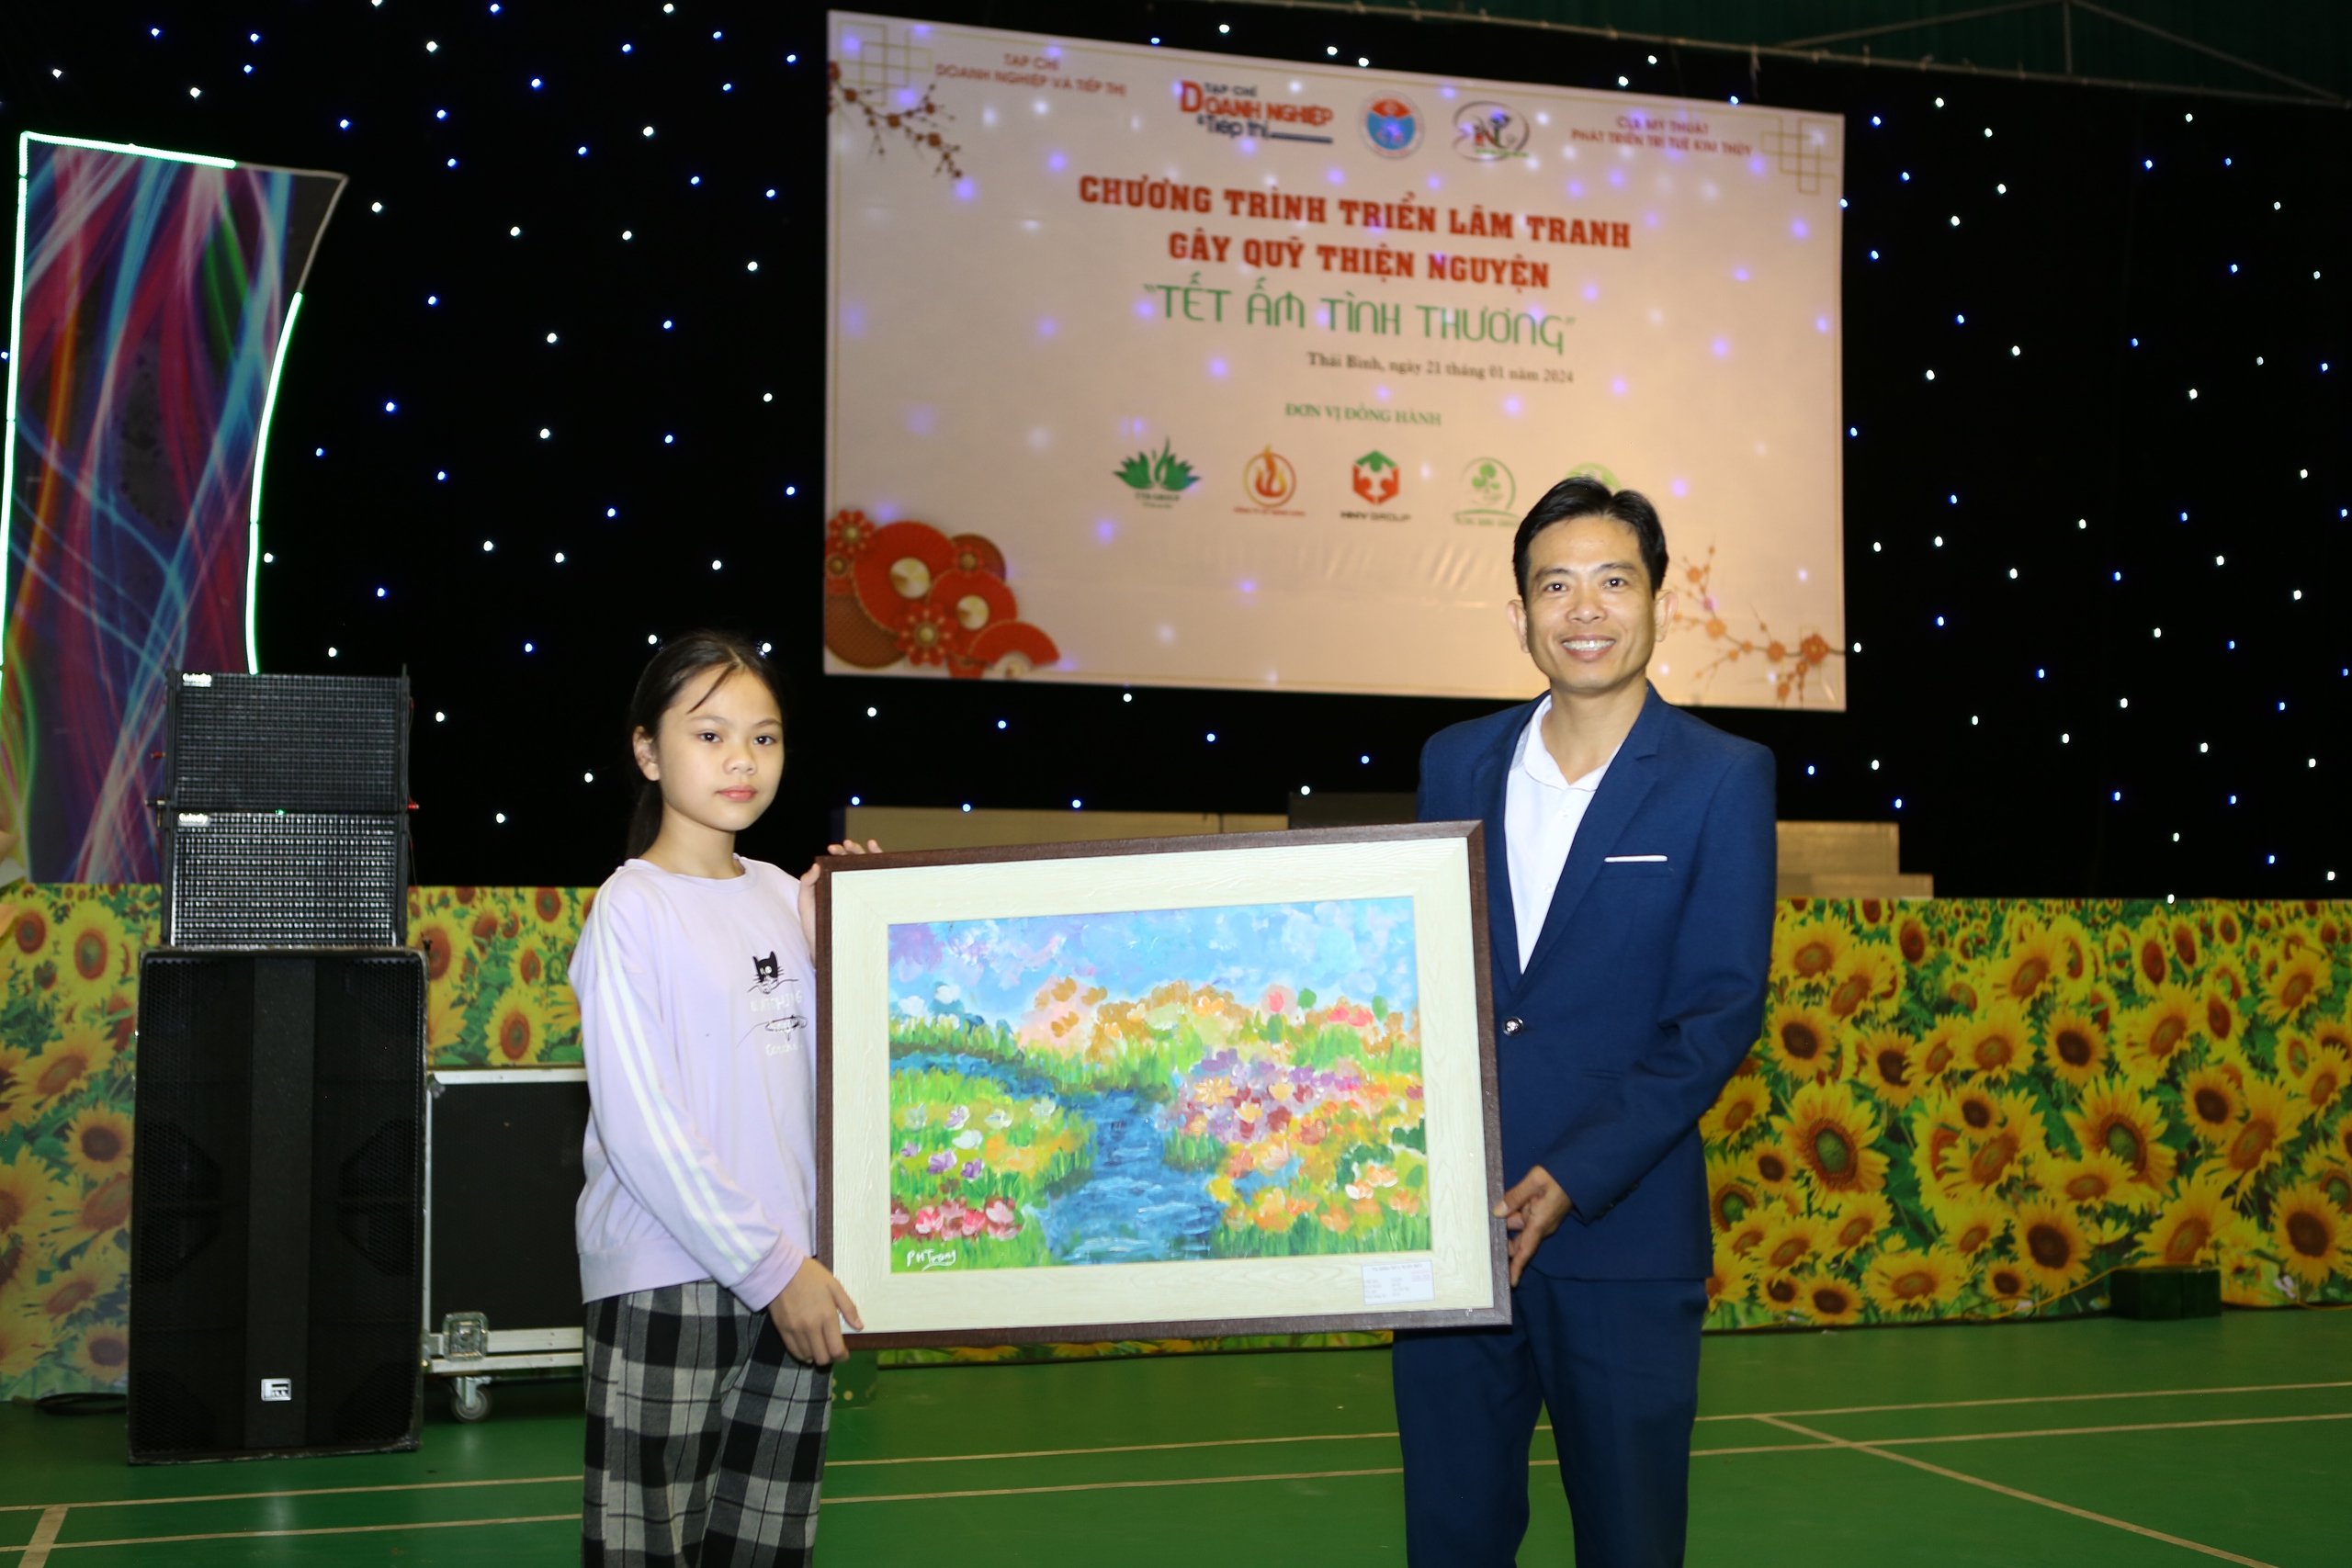 Thái Bình: Tổ chức triển lãm tranh gây quỹ thiện nguyện- Ảnh 14.